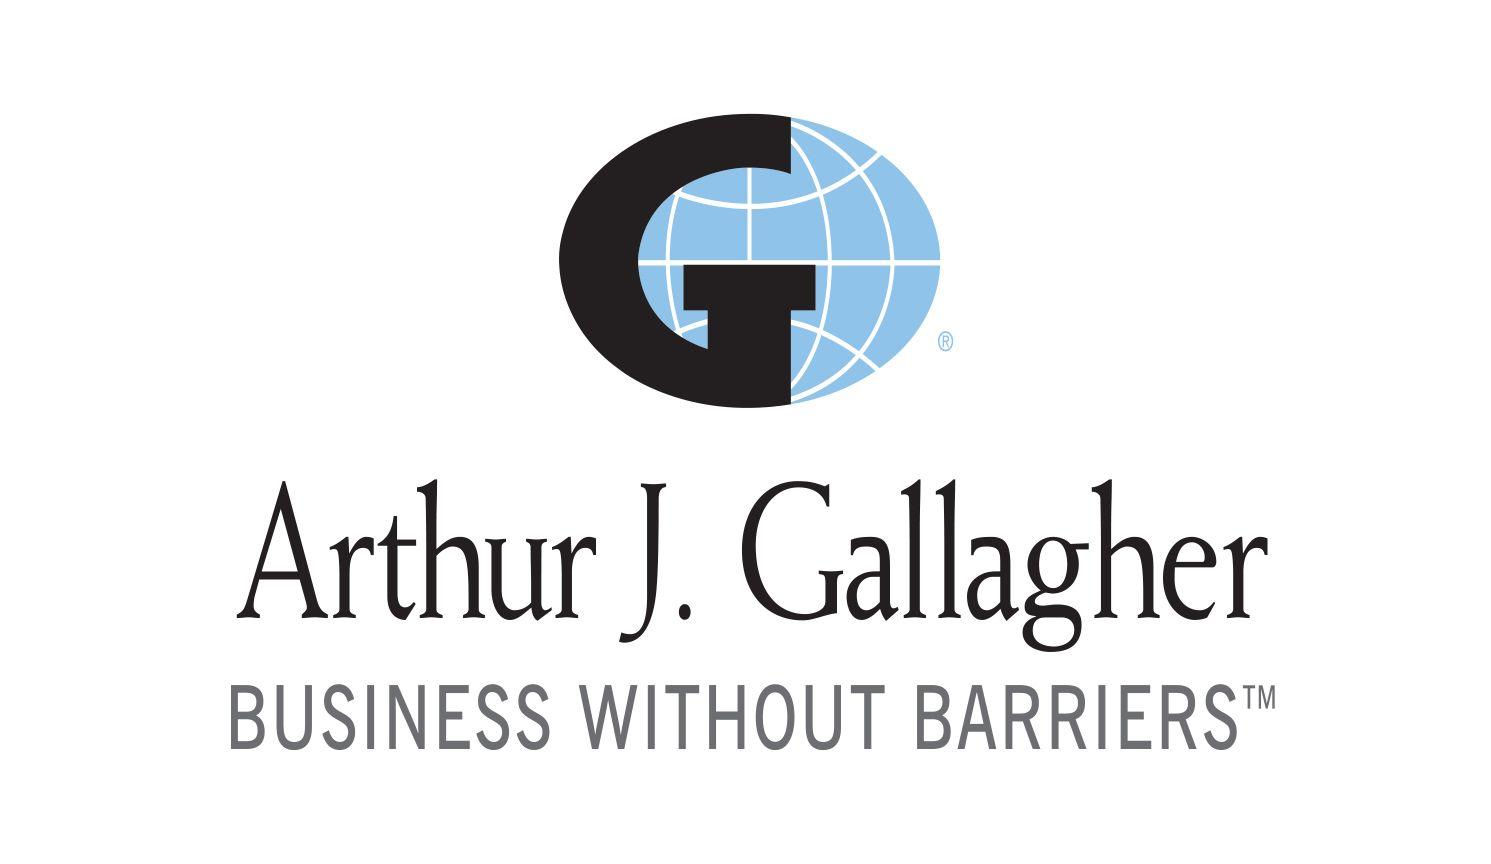 Gallagher Insurance Logo - Meijers Insurance Brokers International